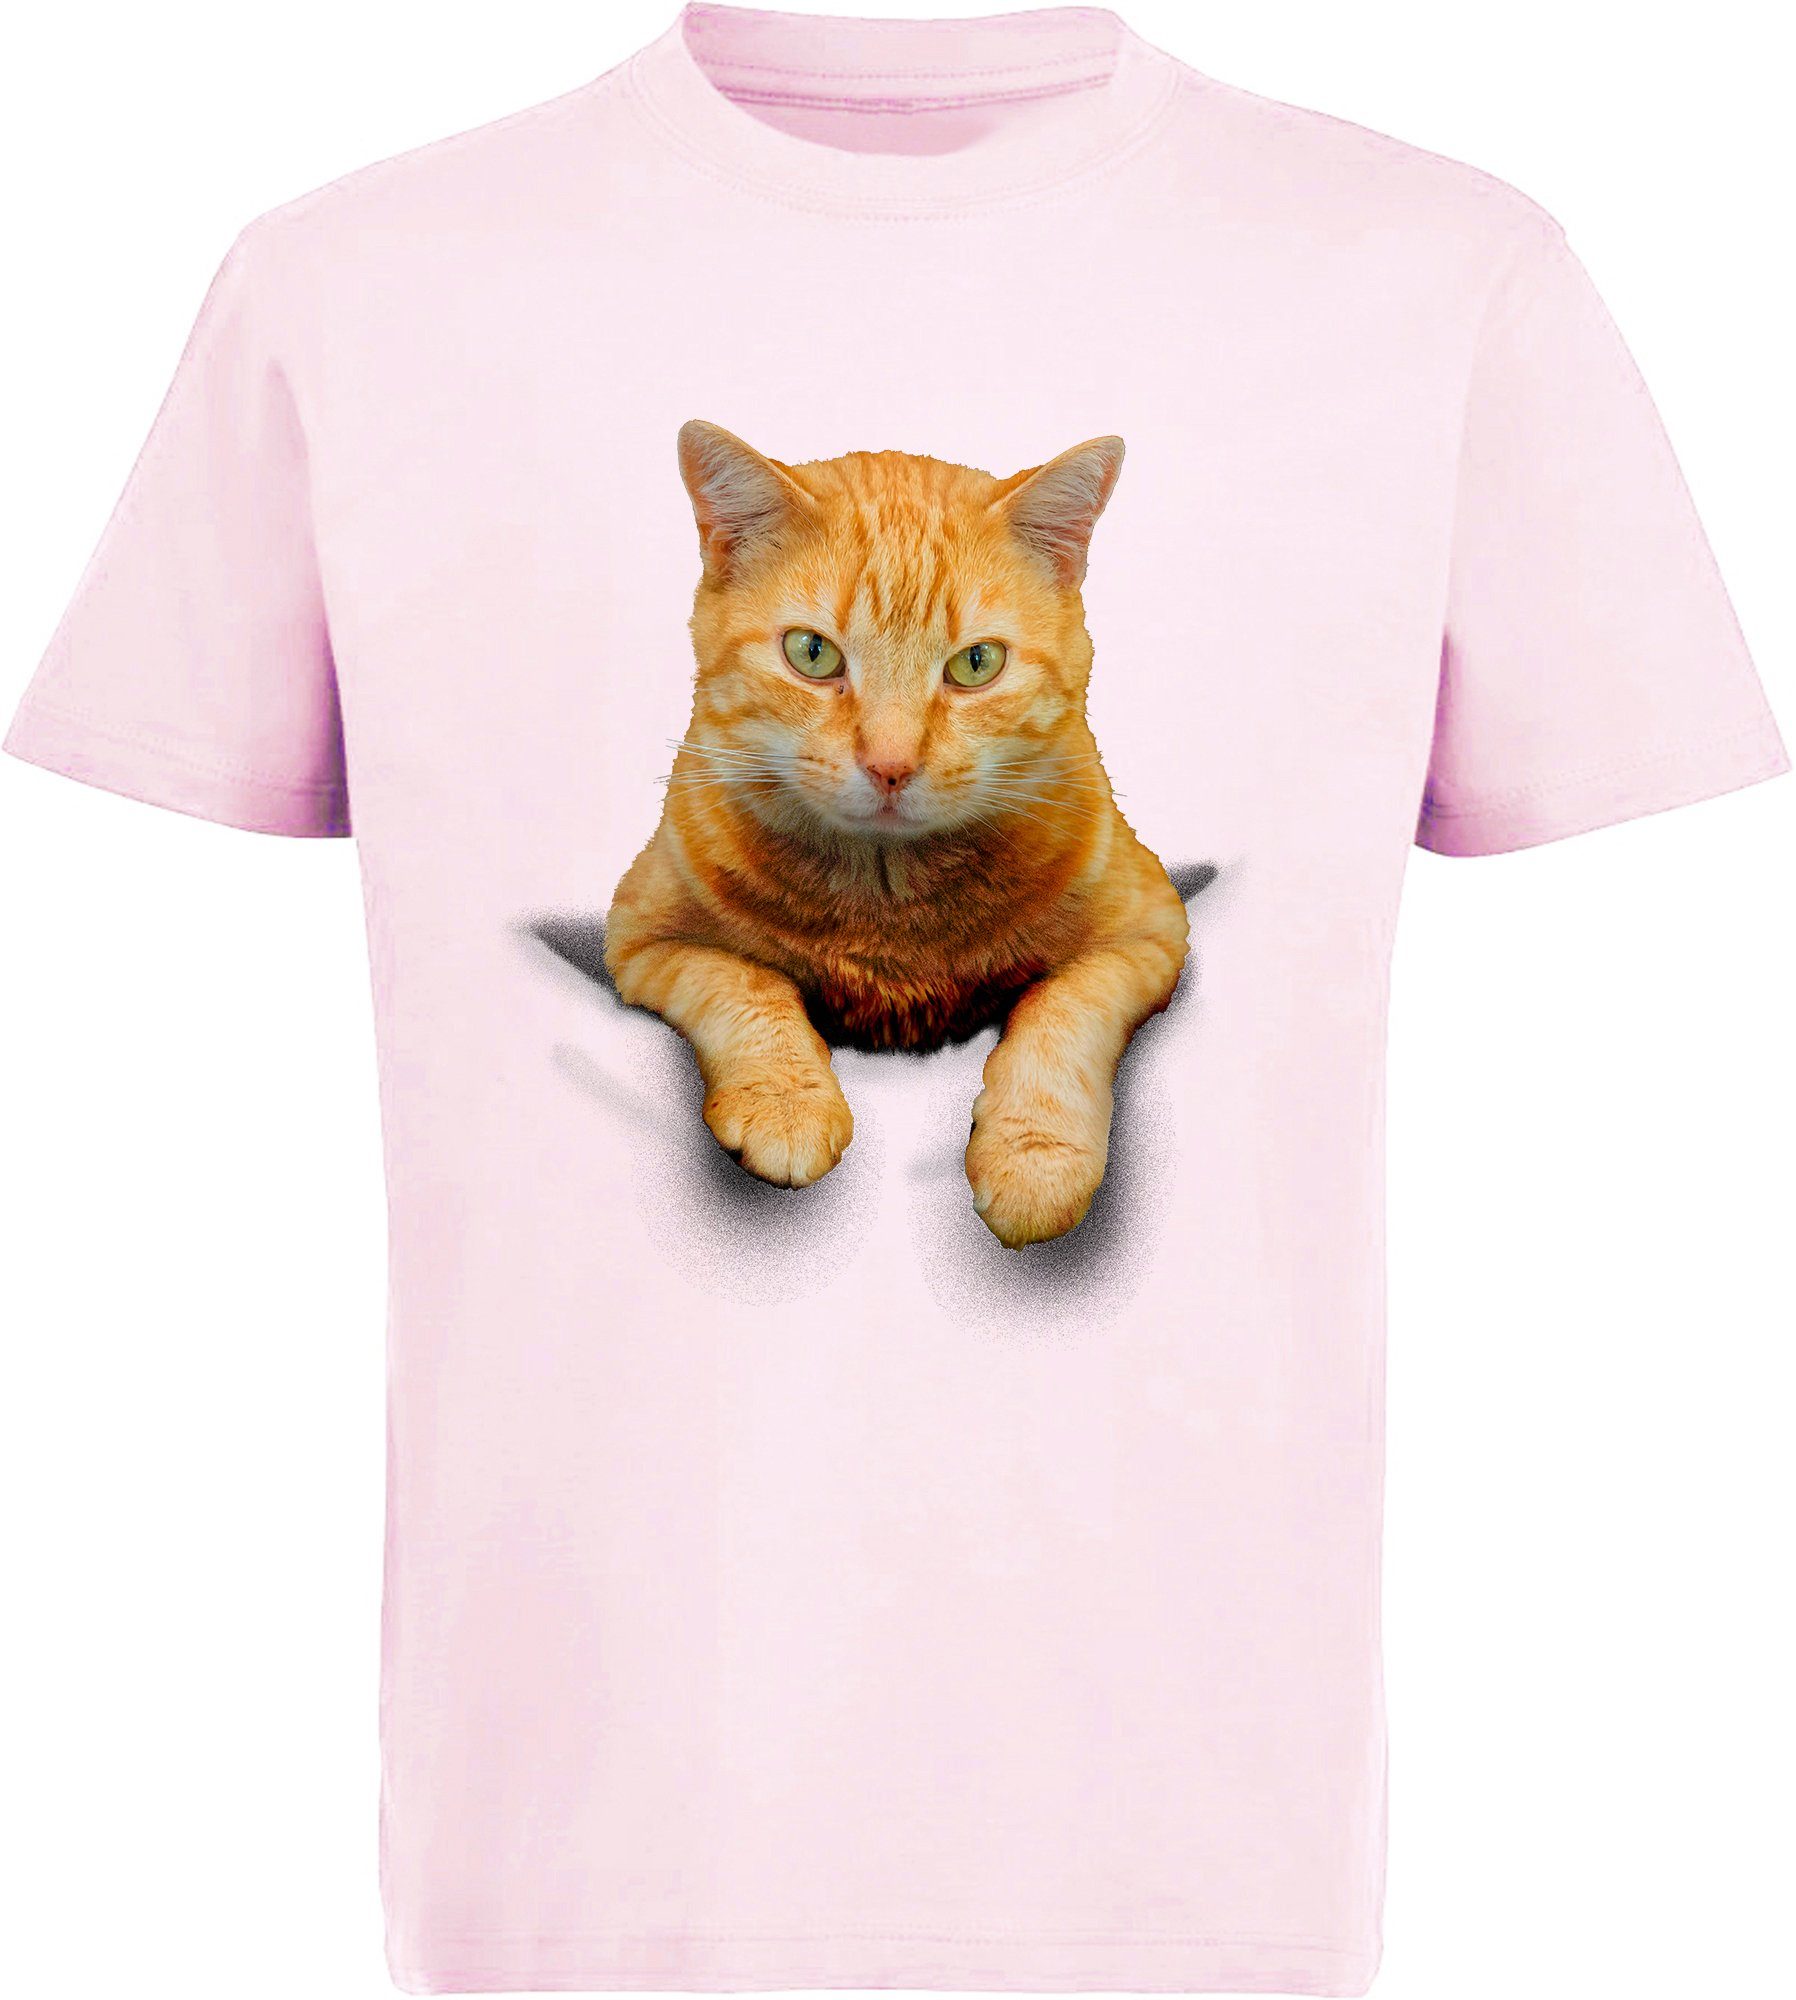 MyDesign24 Print-Shirt bedrucktes in der Katze weiß, Baumwollshirt schwarz, T-Shirt rosa, Tasche i109 Mädchen rot, mit Katze